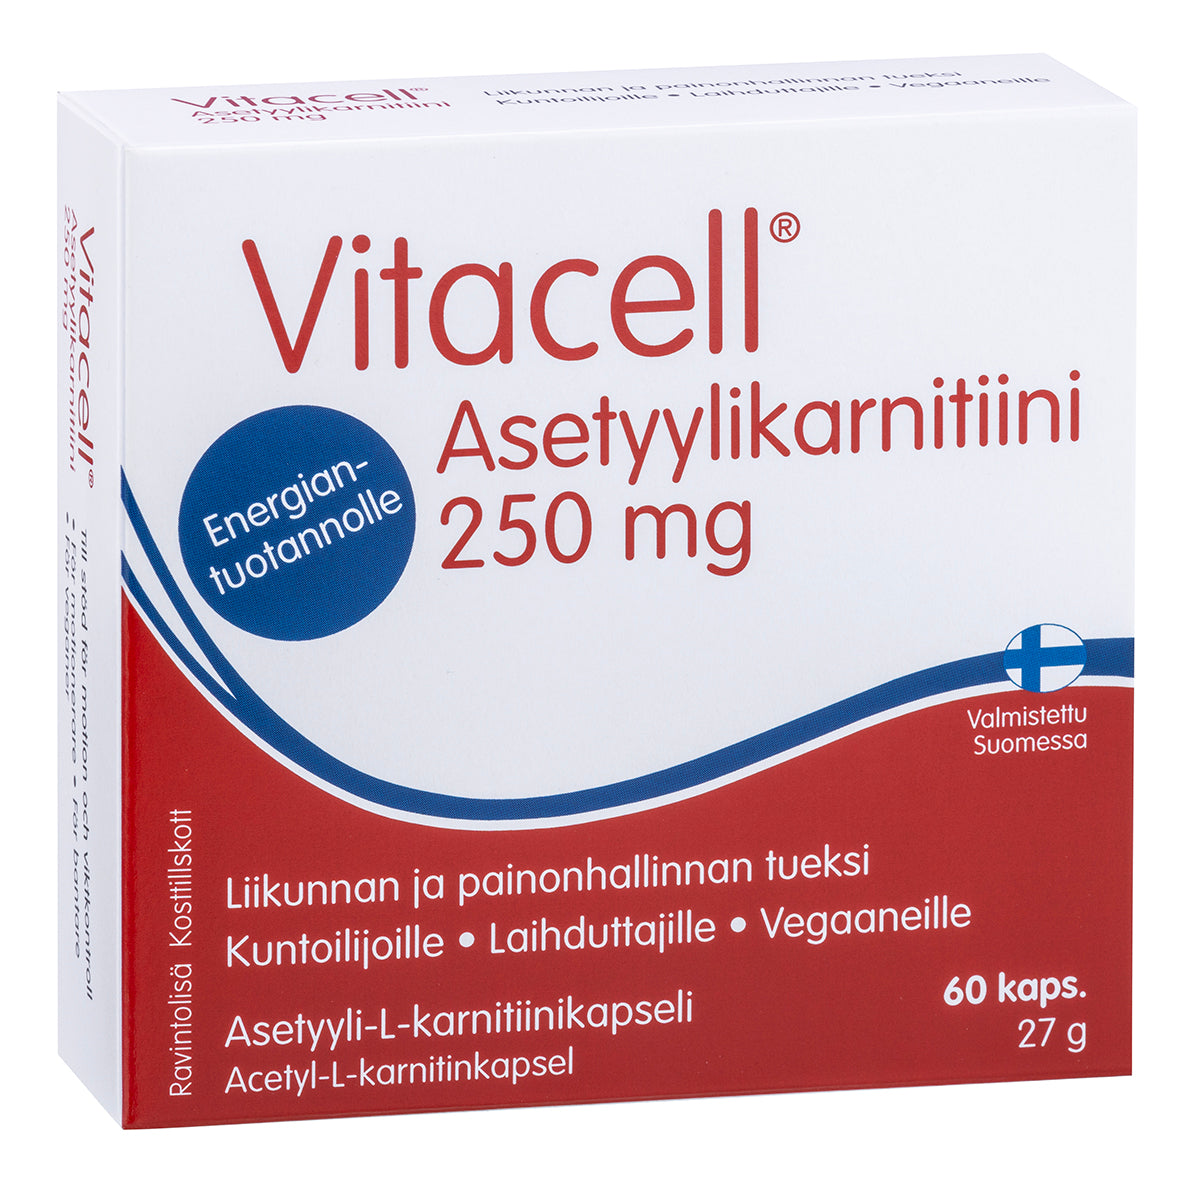 Vitacell Asetyylikarnitiini 250 mg 60 kaps. - Päiväys 12/2023 (huom. kuva uudistuneesta pakkauksesta)